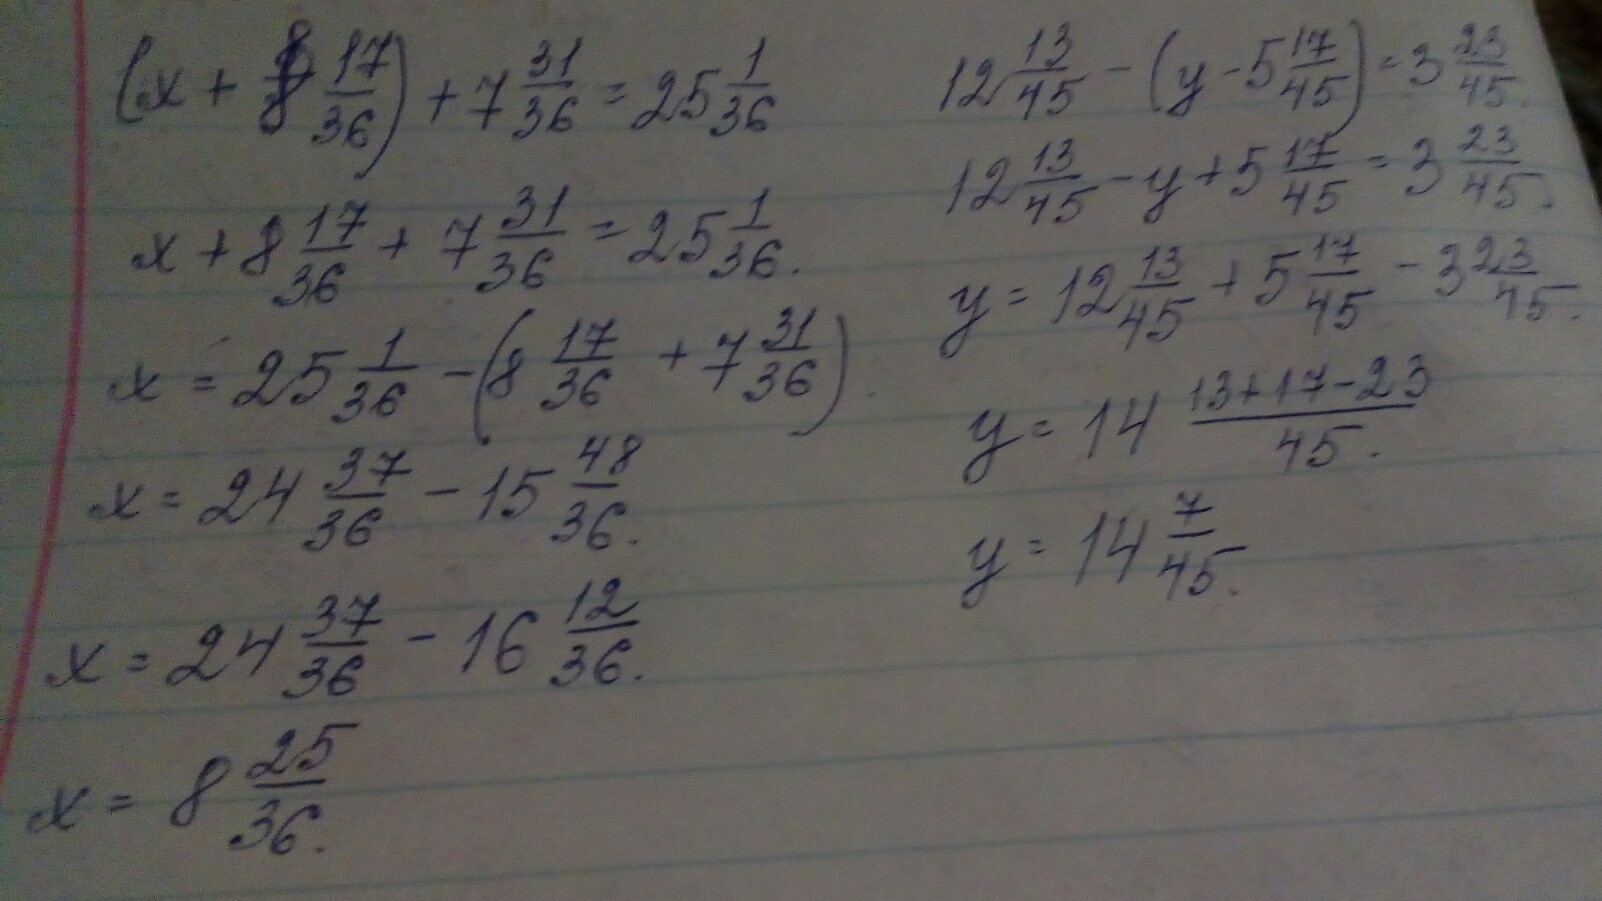 31 36 1 5. 17-Х=8. Реши уравнение x + 8 7 17/36 + 31 36. Решение уравнения с комментированием. X 8 17/36 7 31/36 25 1/36.